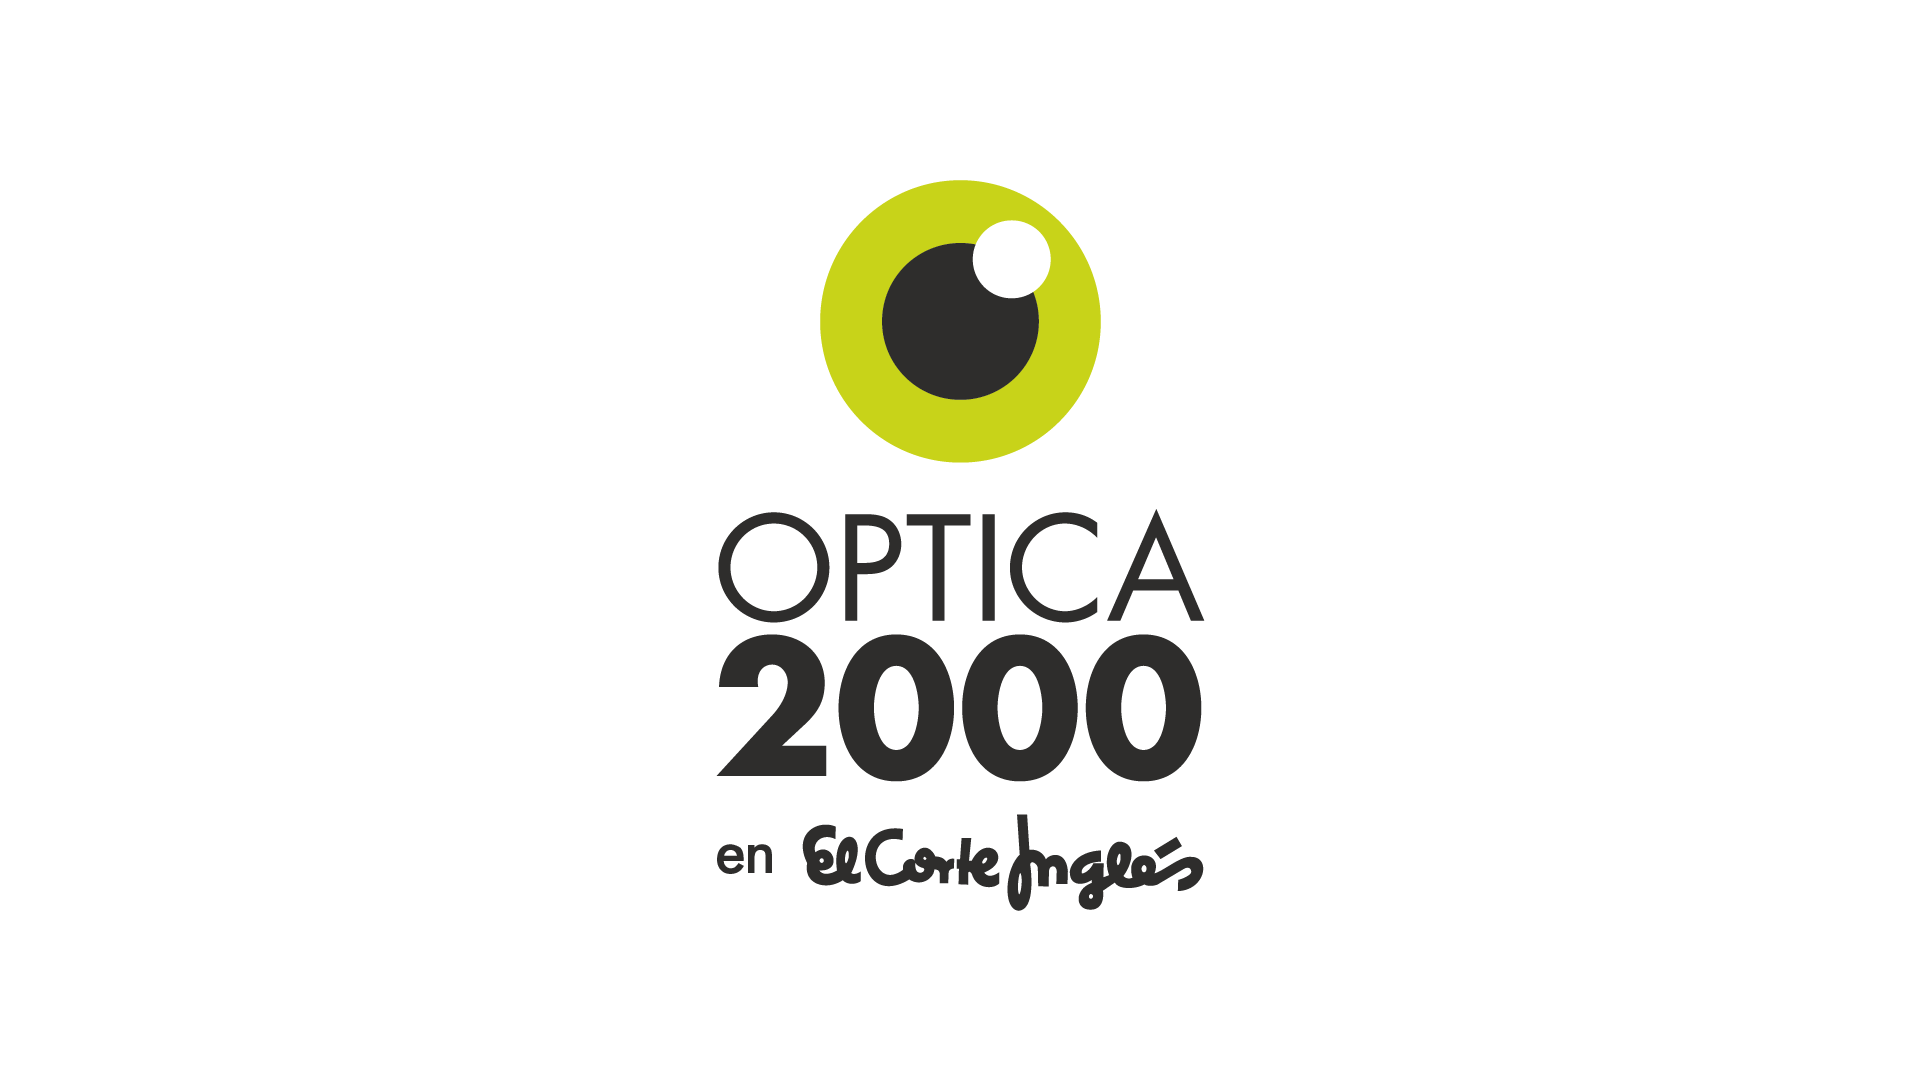 OPTICA 2000 Hipercor Málaga